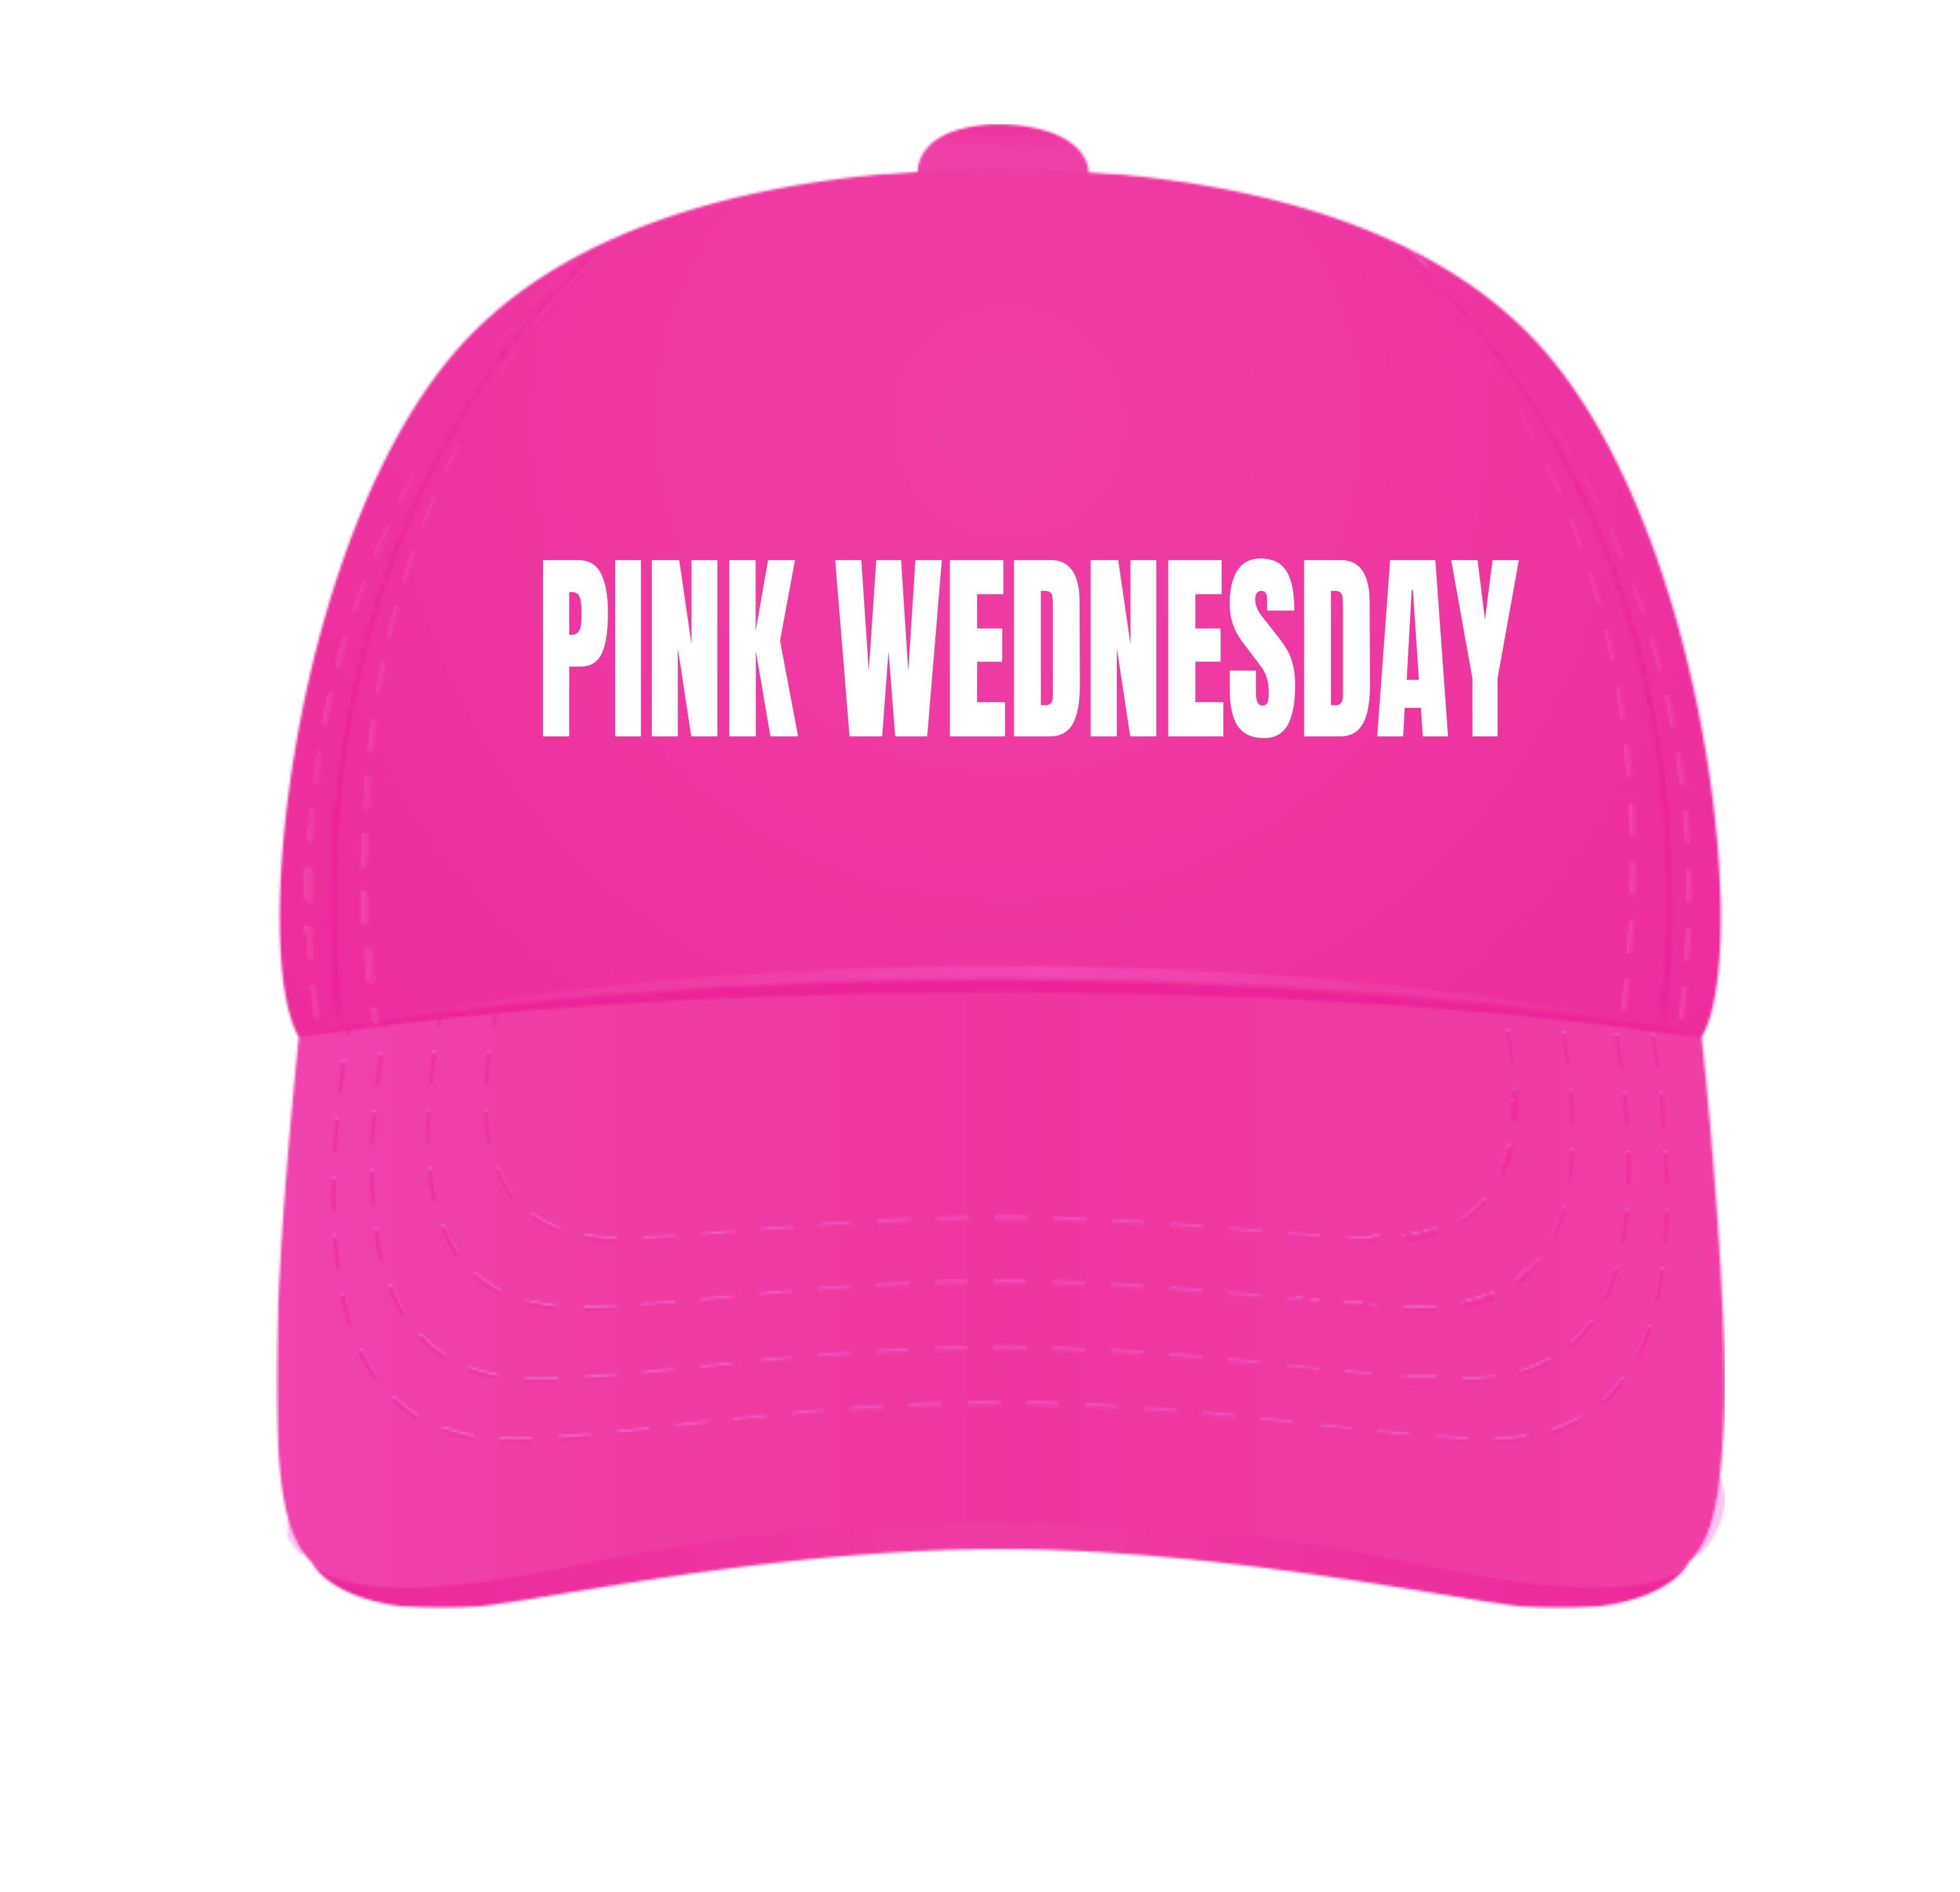 cap pink wednesday roze woensdag.